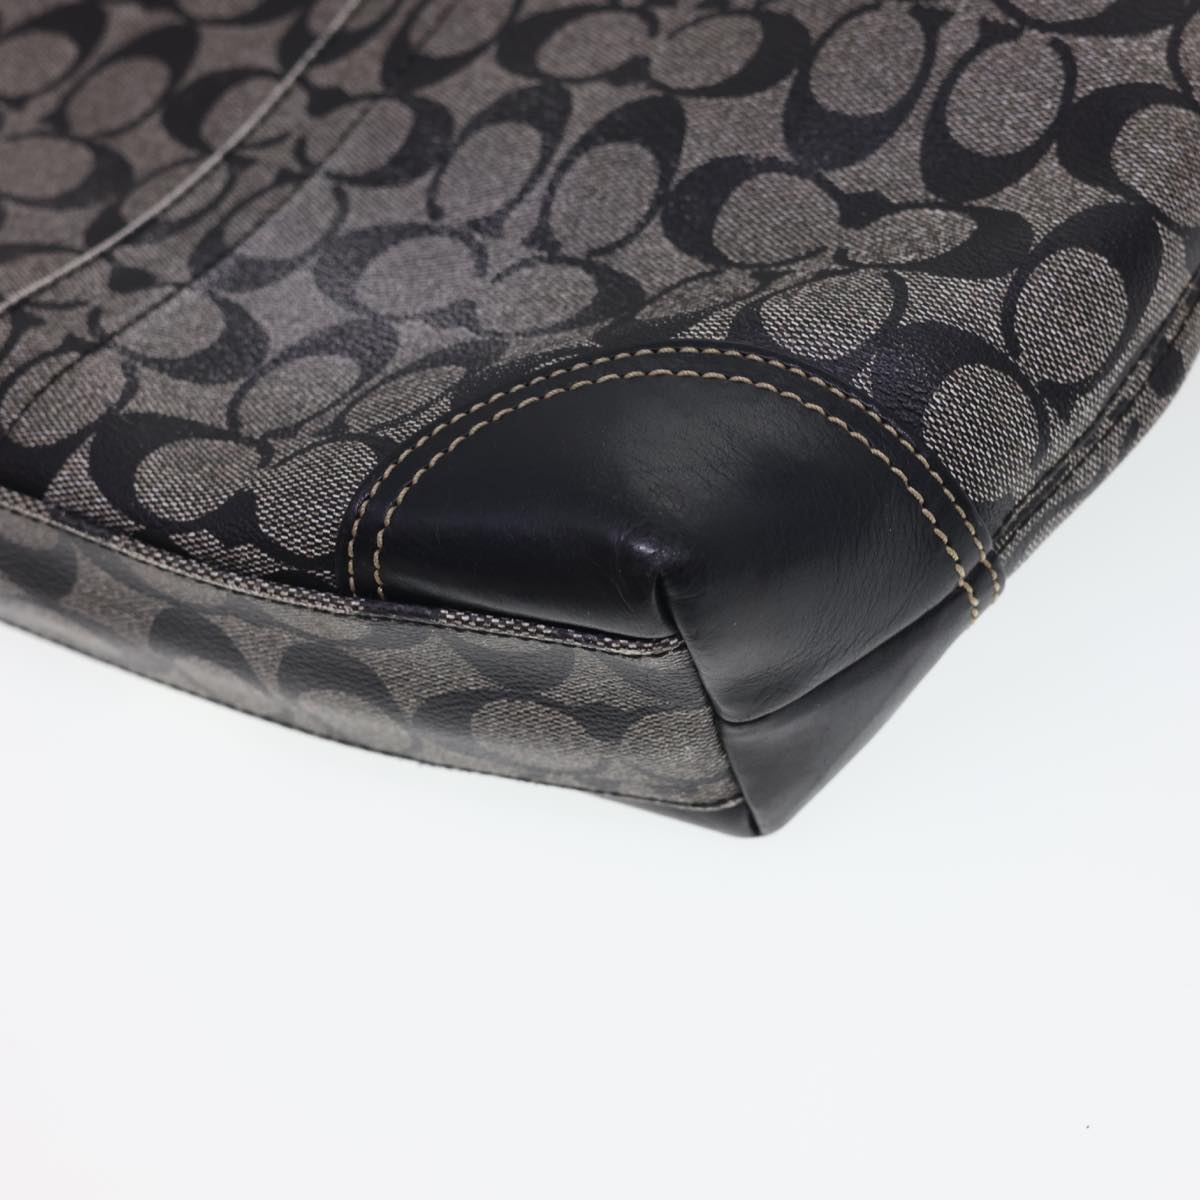 Coach Signature Canvas Tote Bag PVC Leather 3Set Brown Beige black Auth 40544